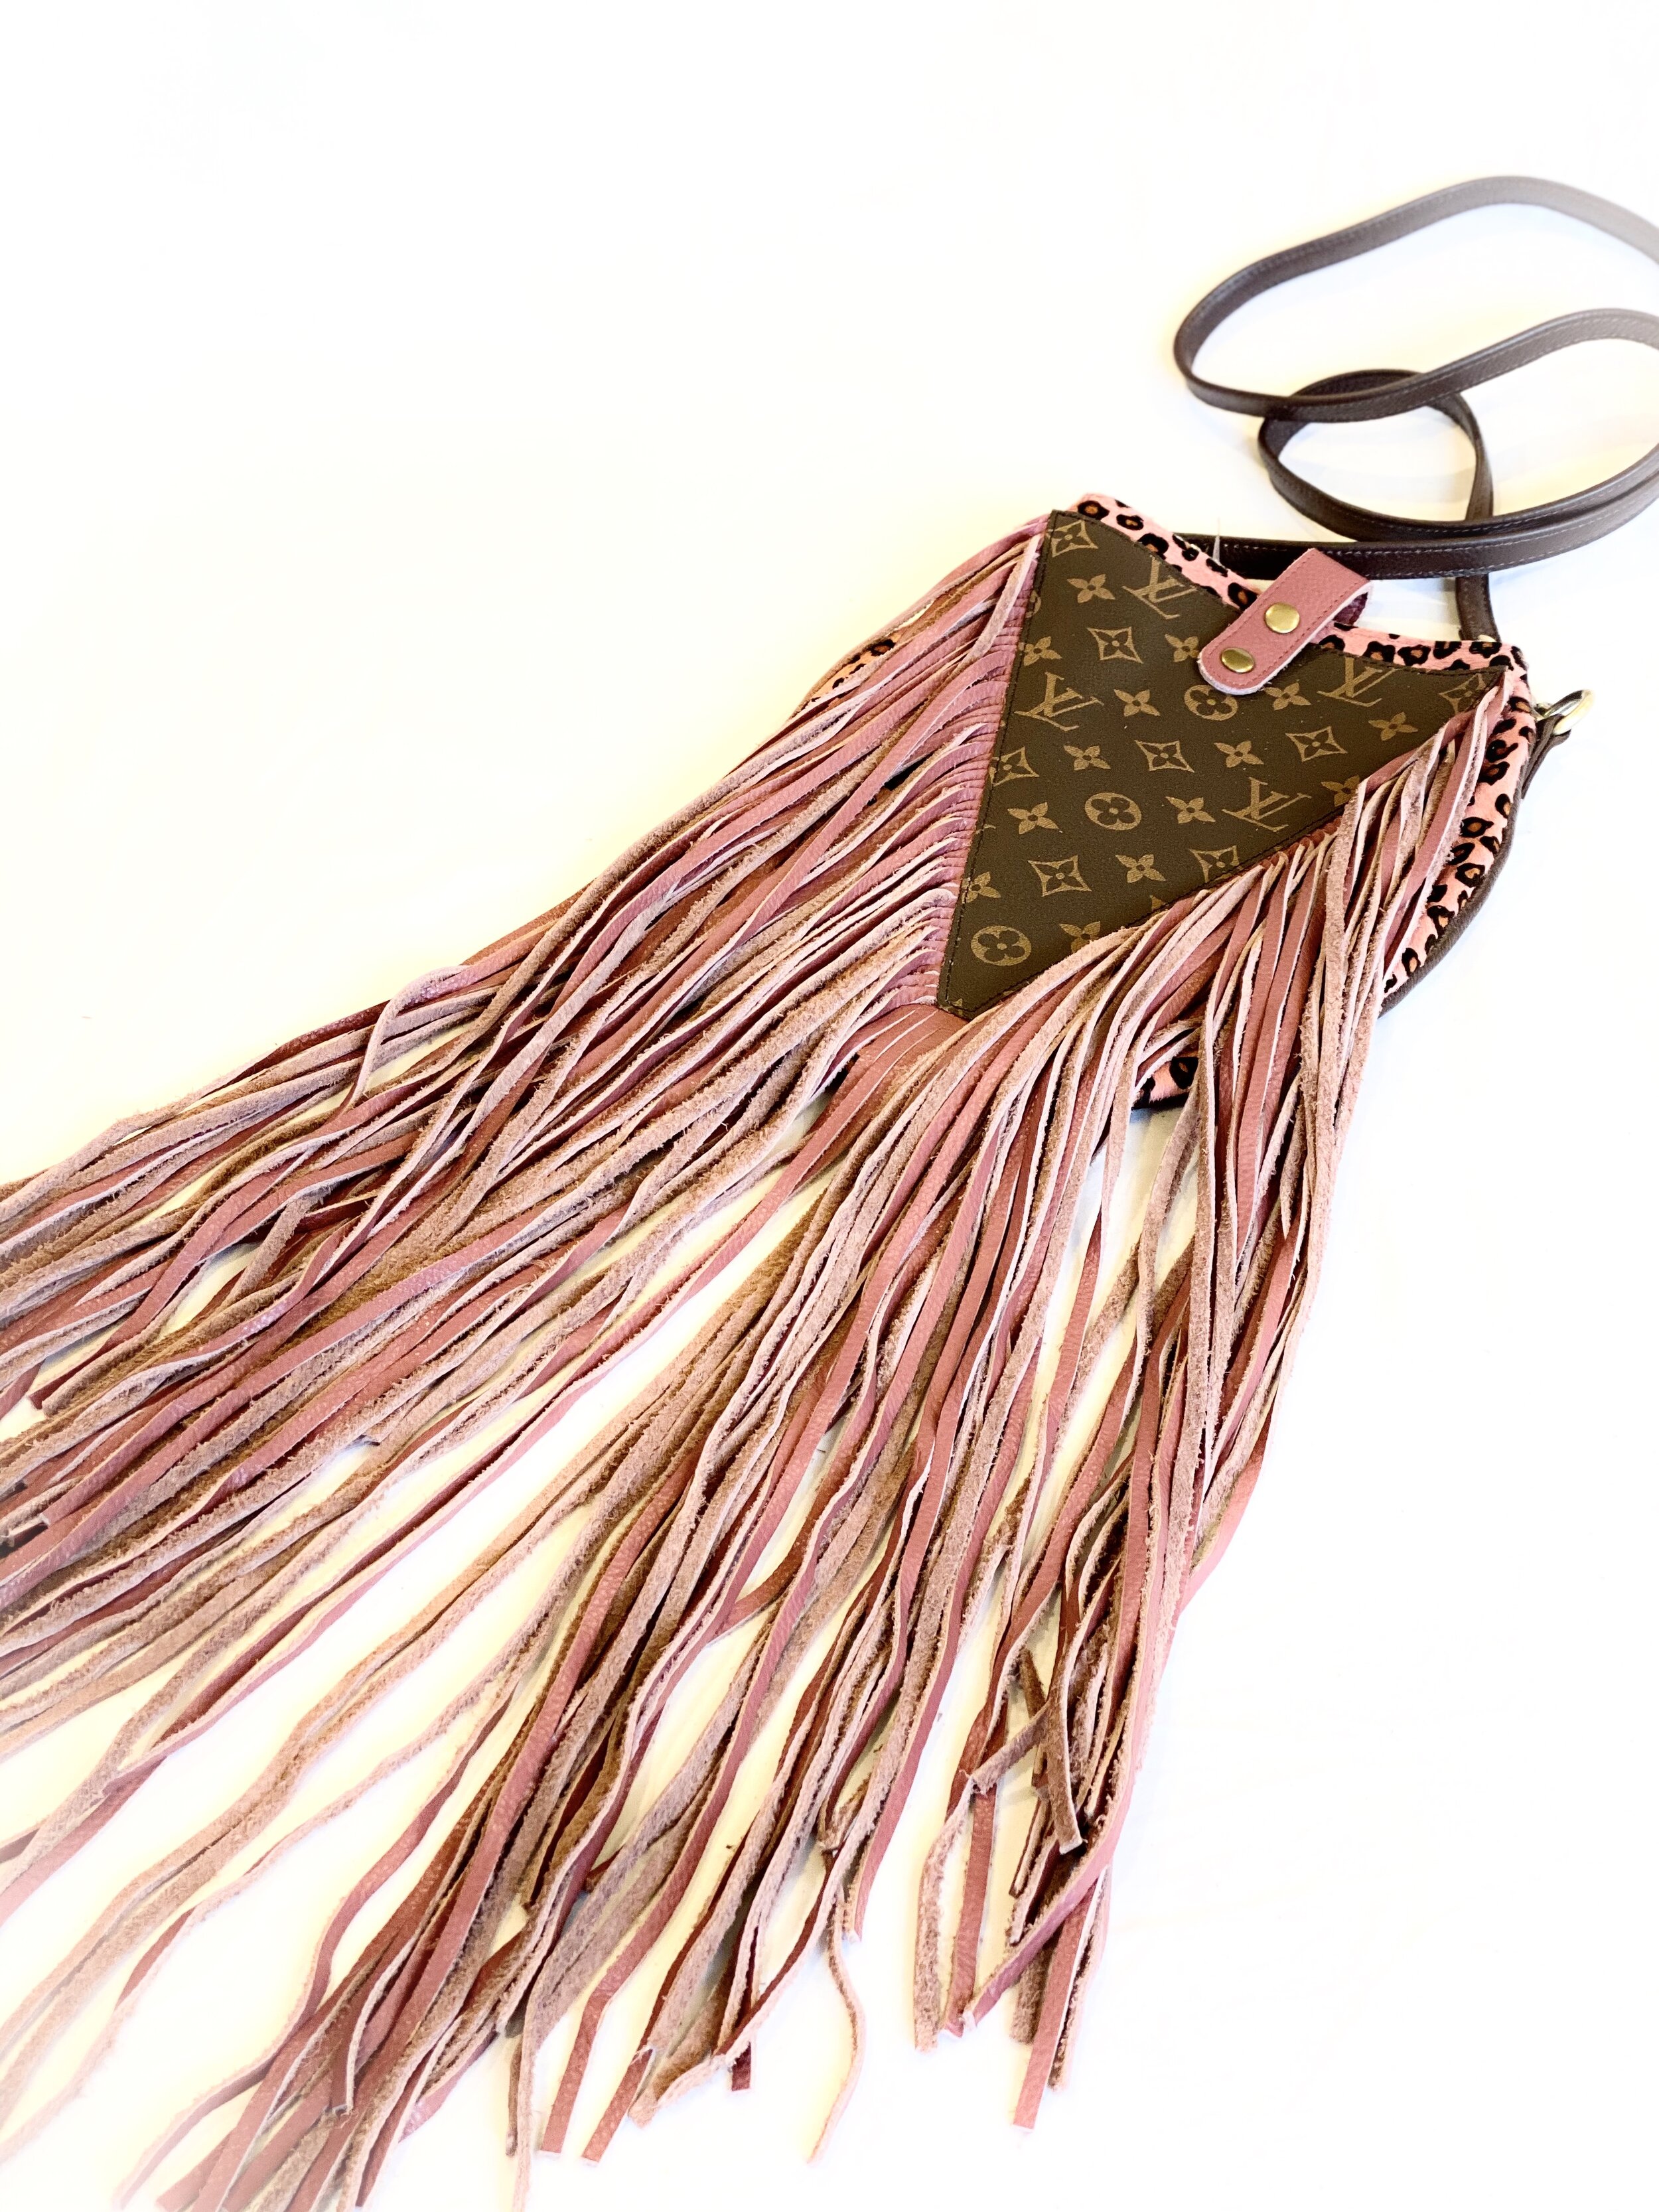 Polished Coconut - #upcycled Louis Vuitton fringe bag #slowfashion